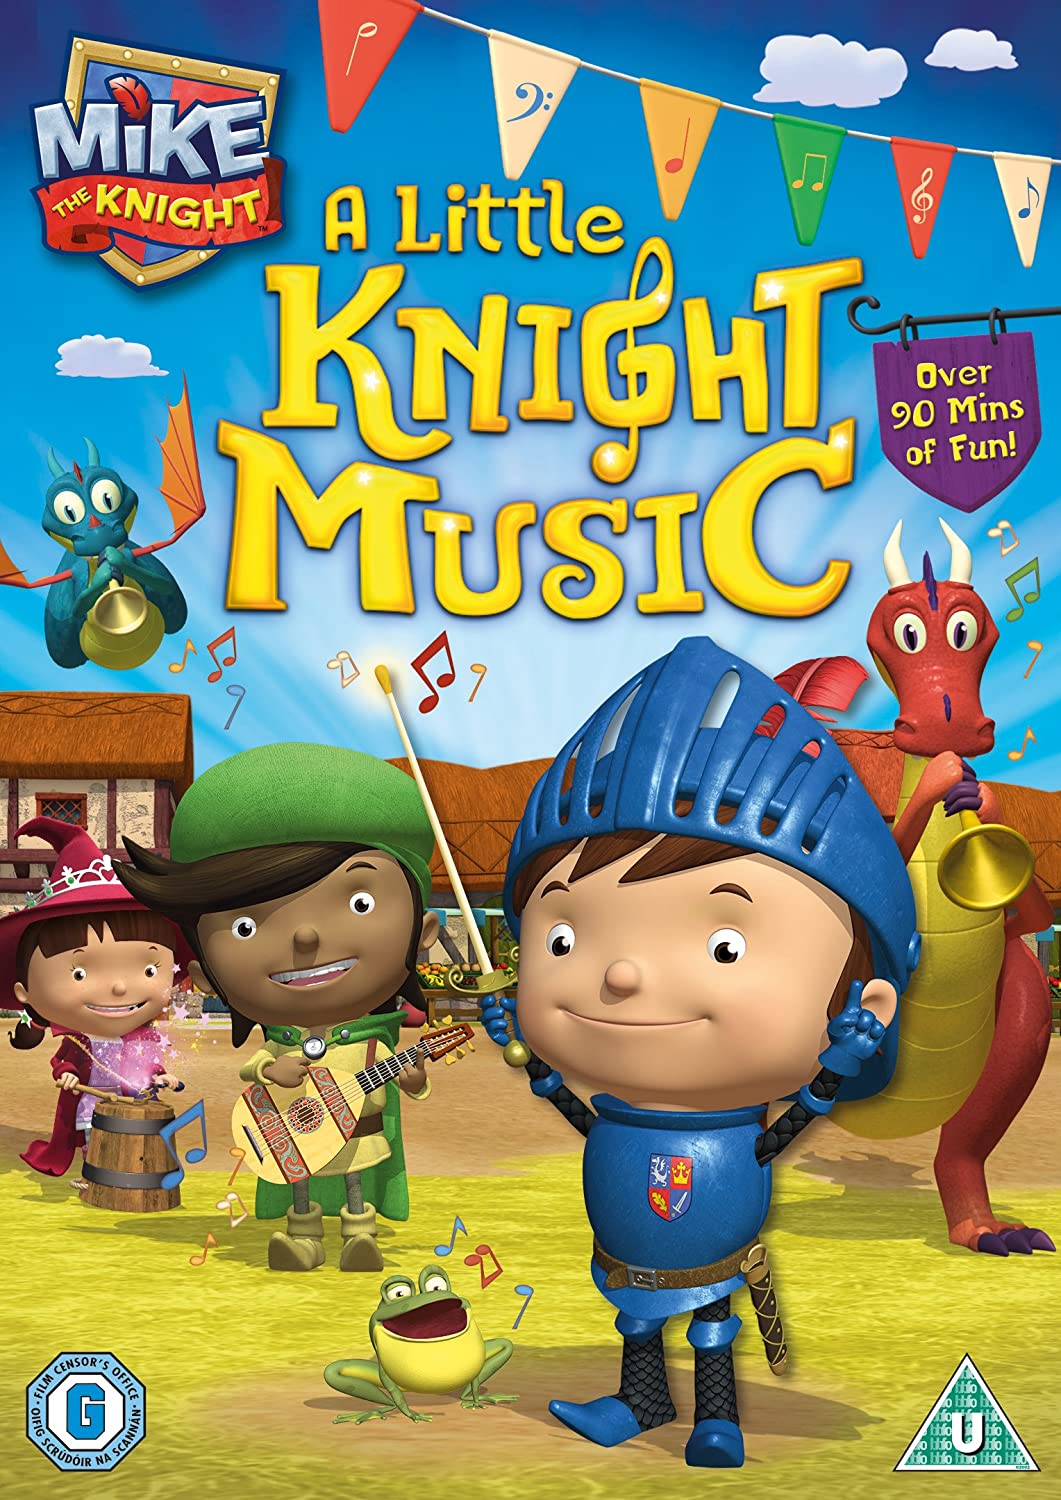 Mike The Knight: Eine kleine Rittermusik